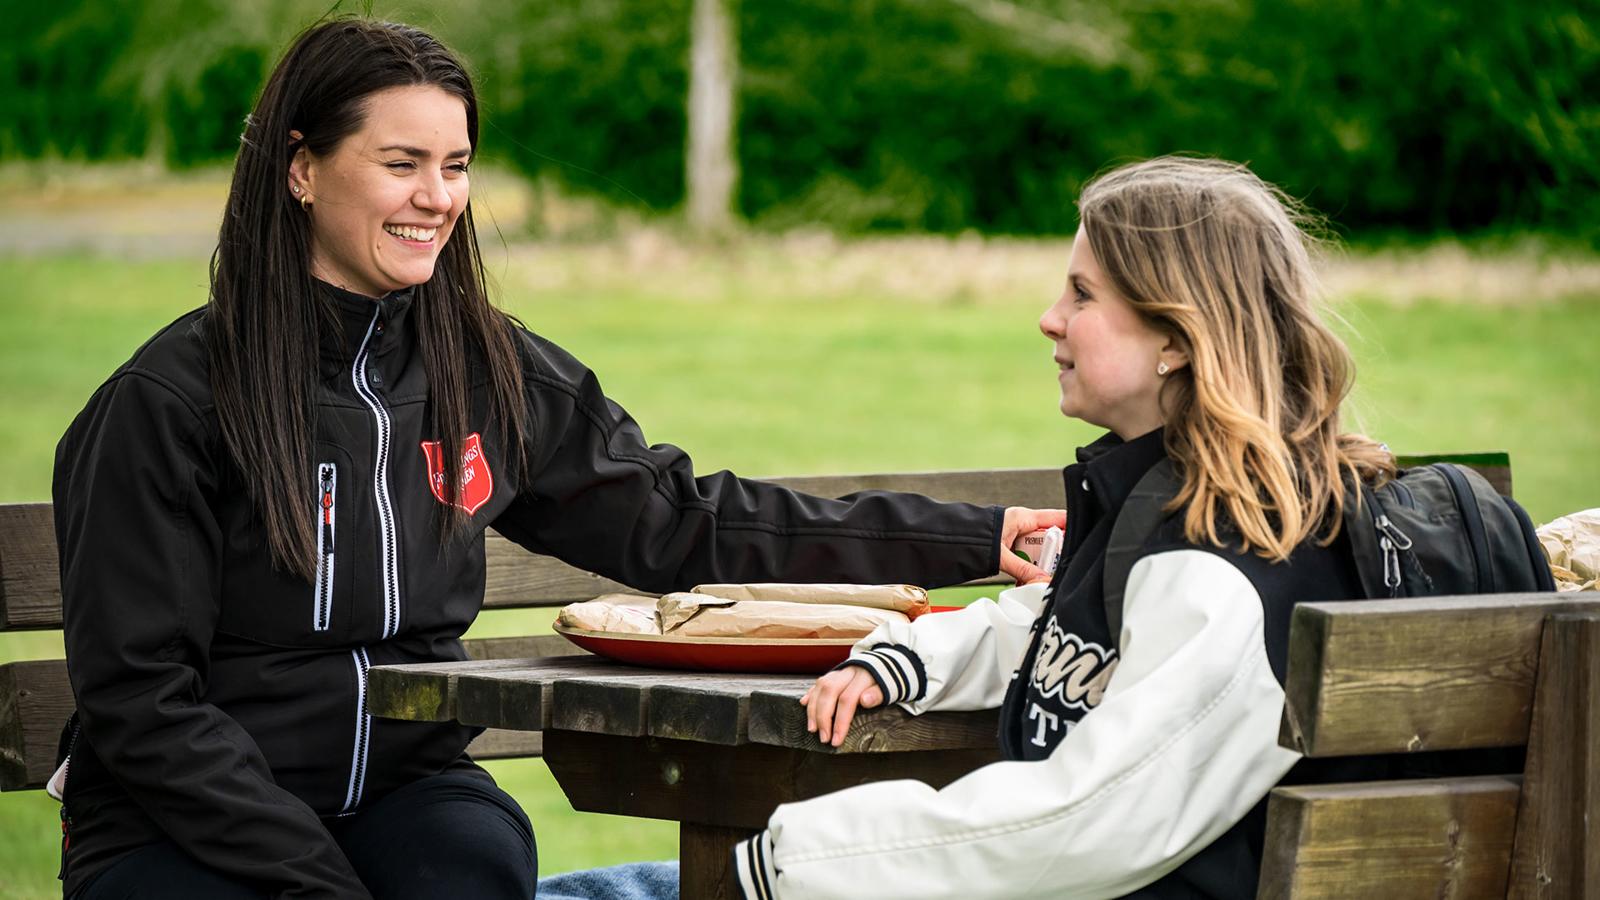 En ung flicka sitter vid ett picknickbord tillsammans med en glad kvinna som har Frälsningsarméns sköld på jackan. I bakgrunden syns ett grönområde.